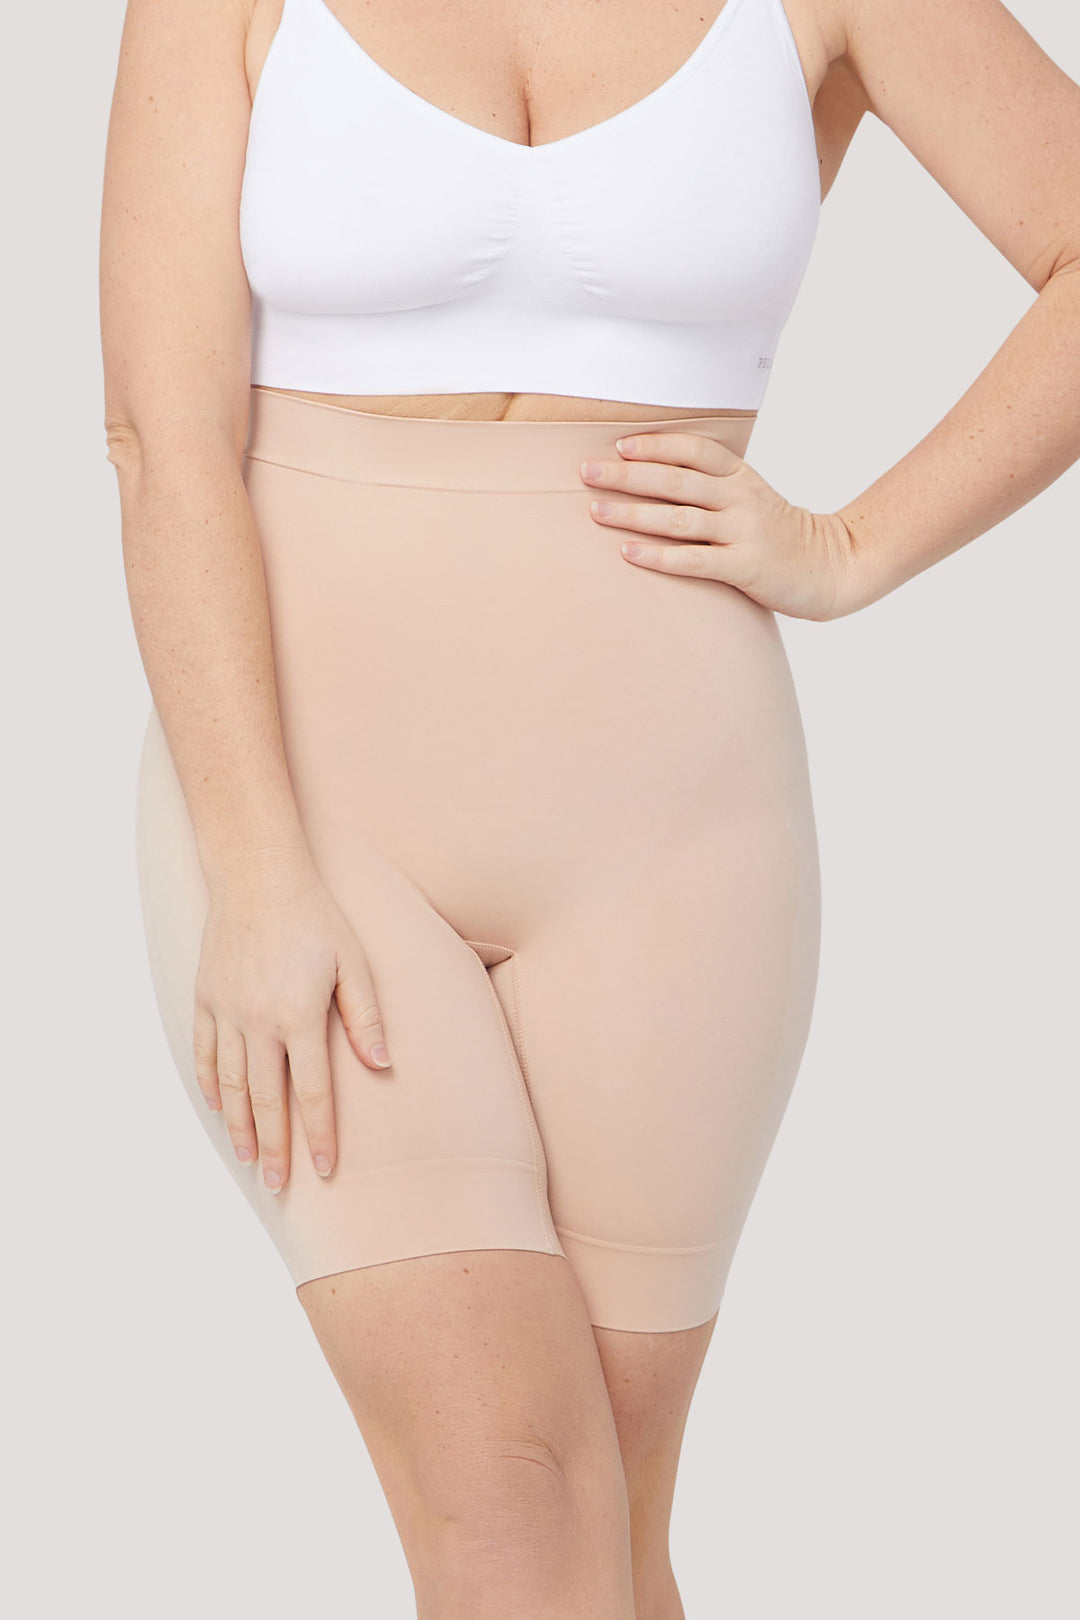 https://www.bellabodies.com.au/cdn/shop/products/Bella-Bodies-Australia-Firming-Anti-Chafing-Shorts-Latte-FR.jpg?v=1706072315&width=1080